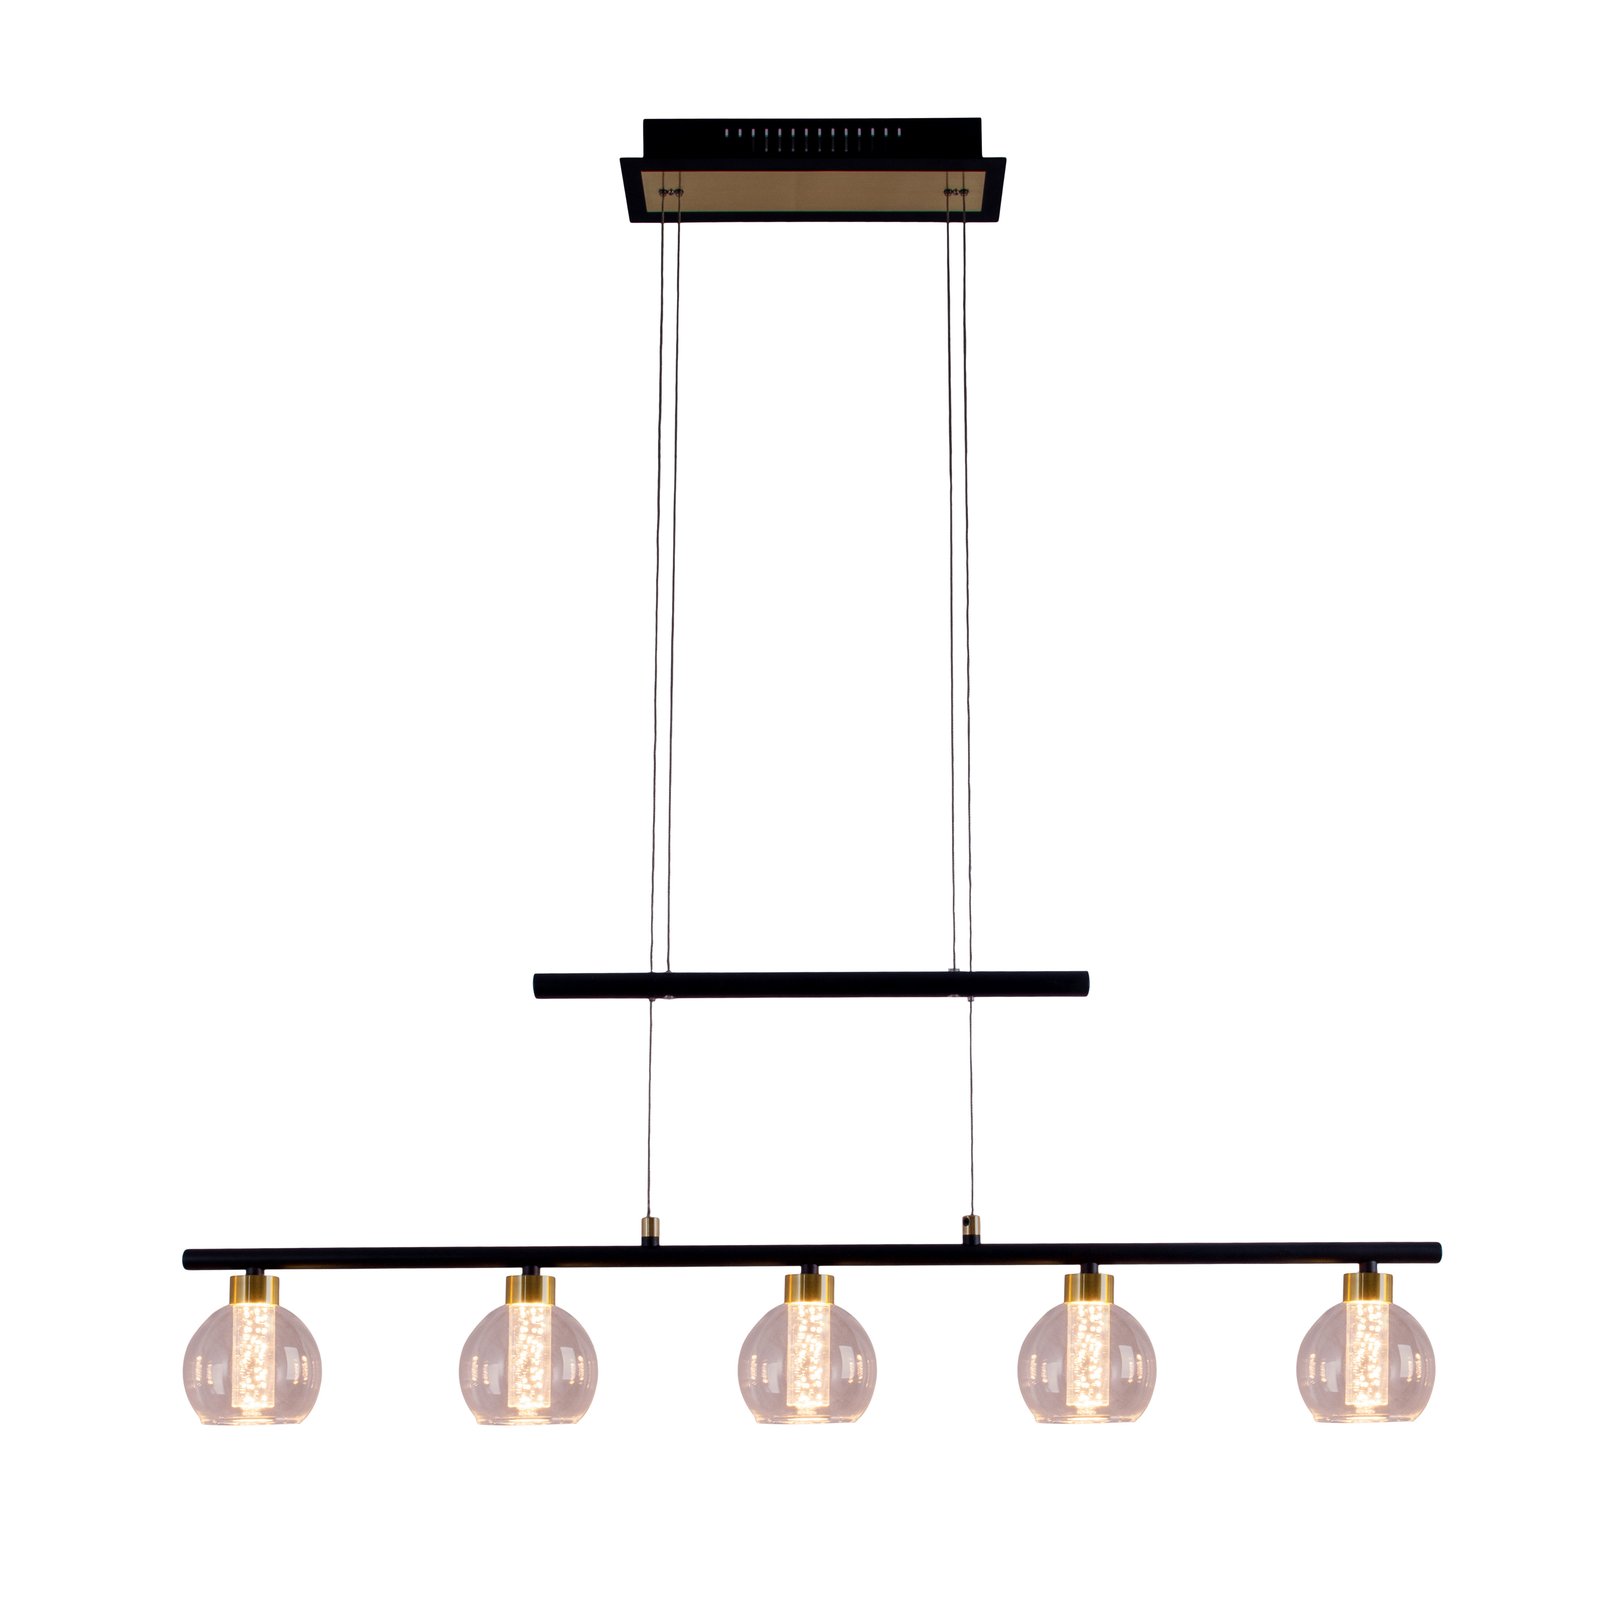 LED-riippuvalaisin Brass 5-lamppuinen korkeussäätö